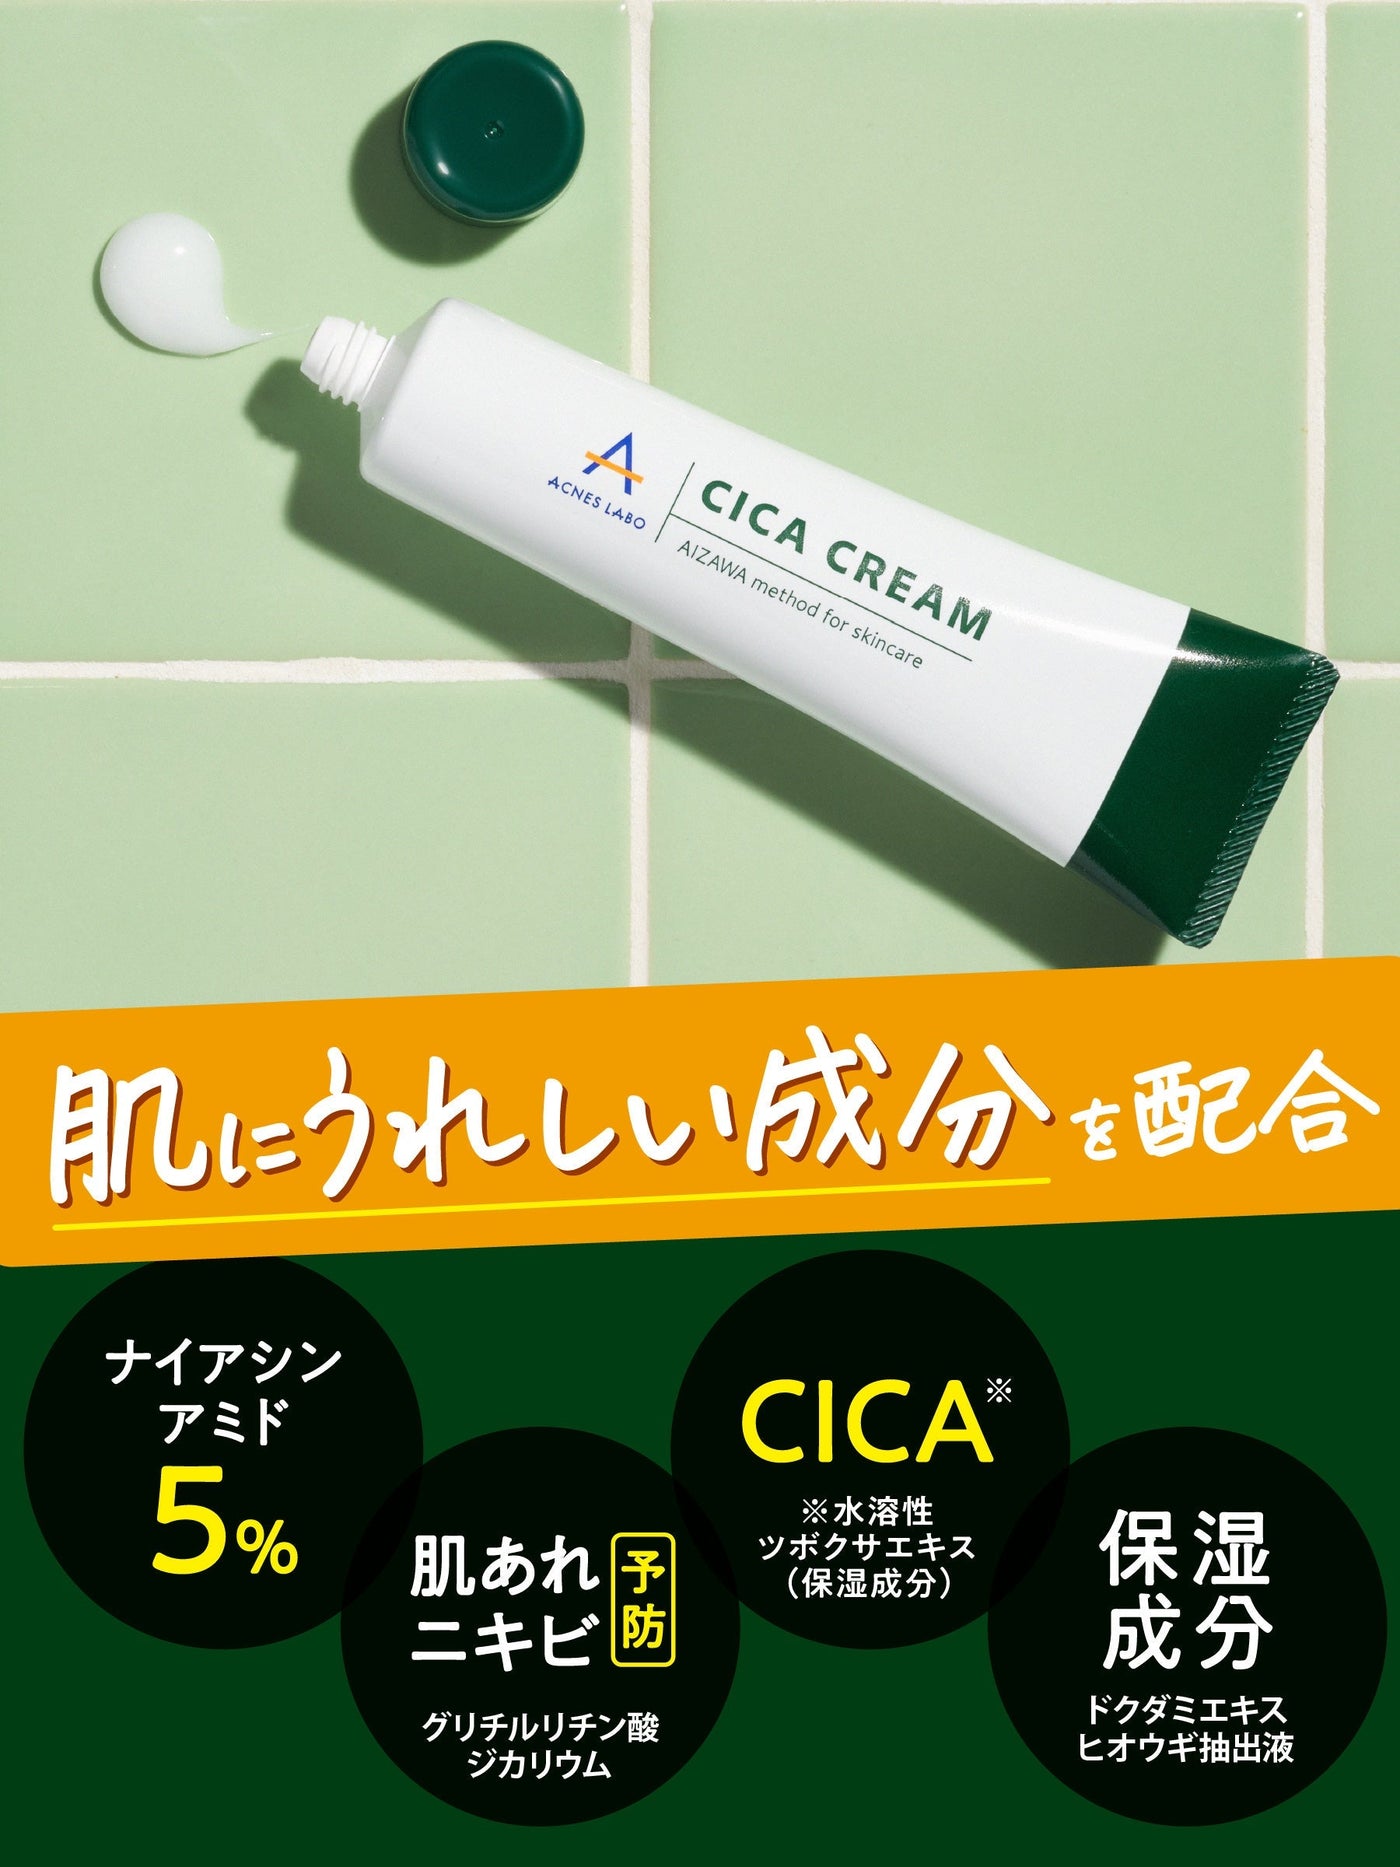 【医薬部外品】CICAクリーム+スポッツクリーム+洗顔セット アクネスラボ